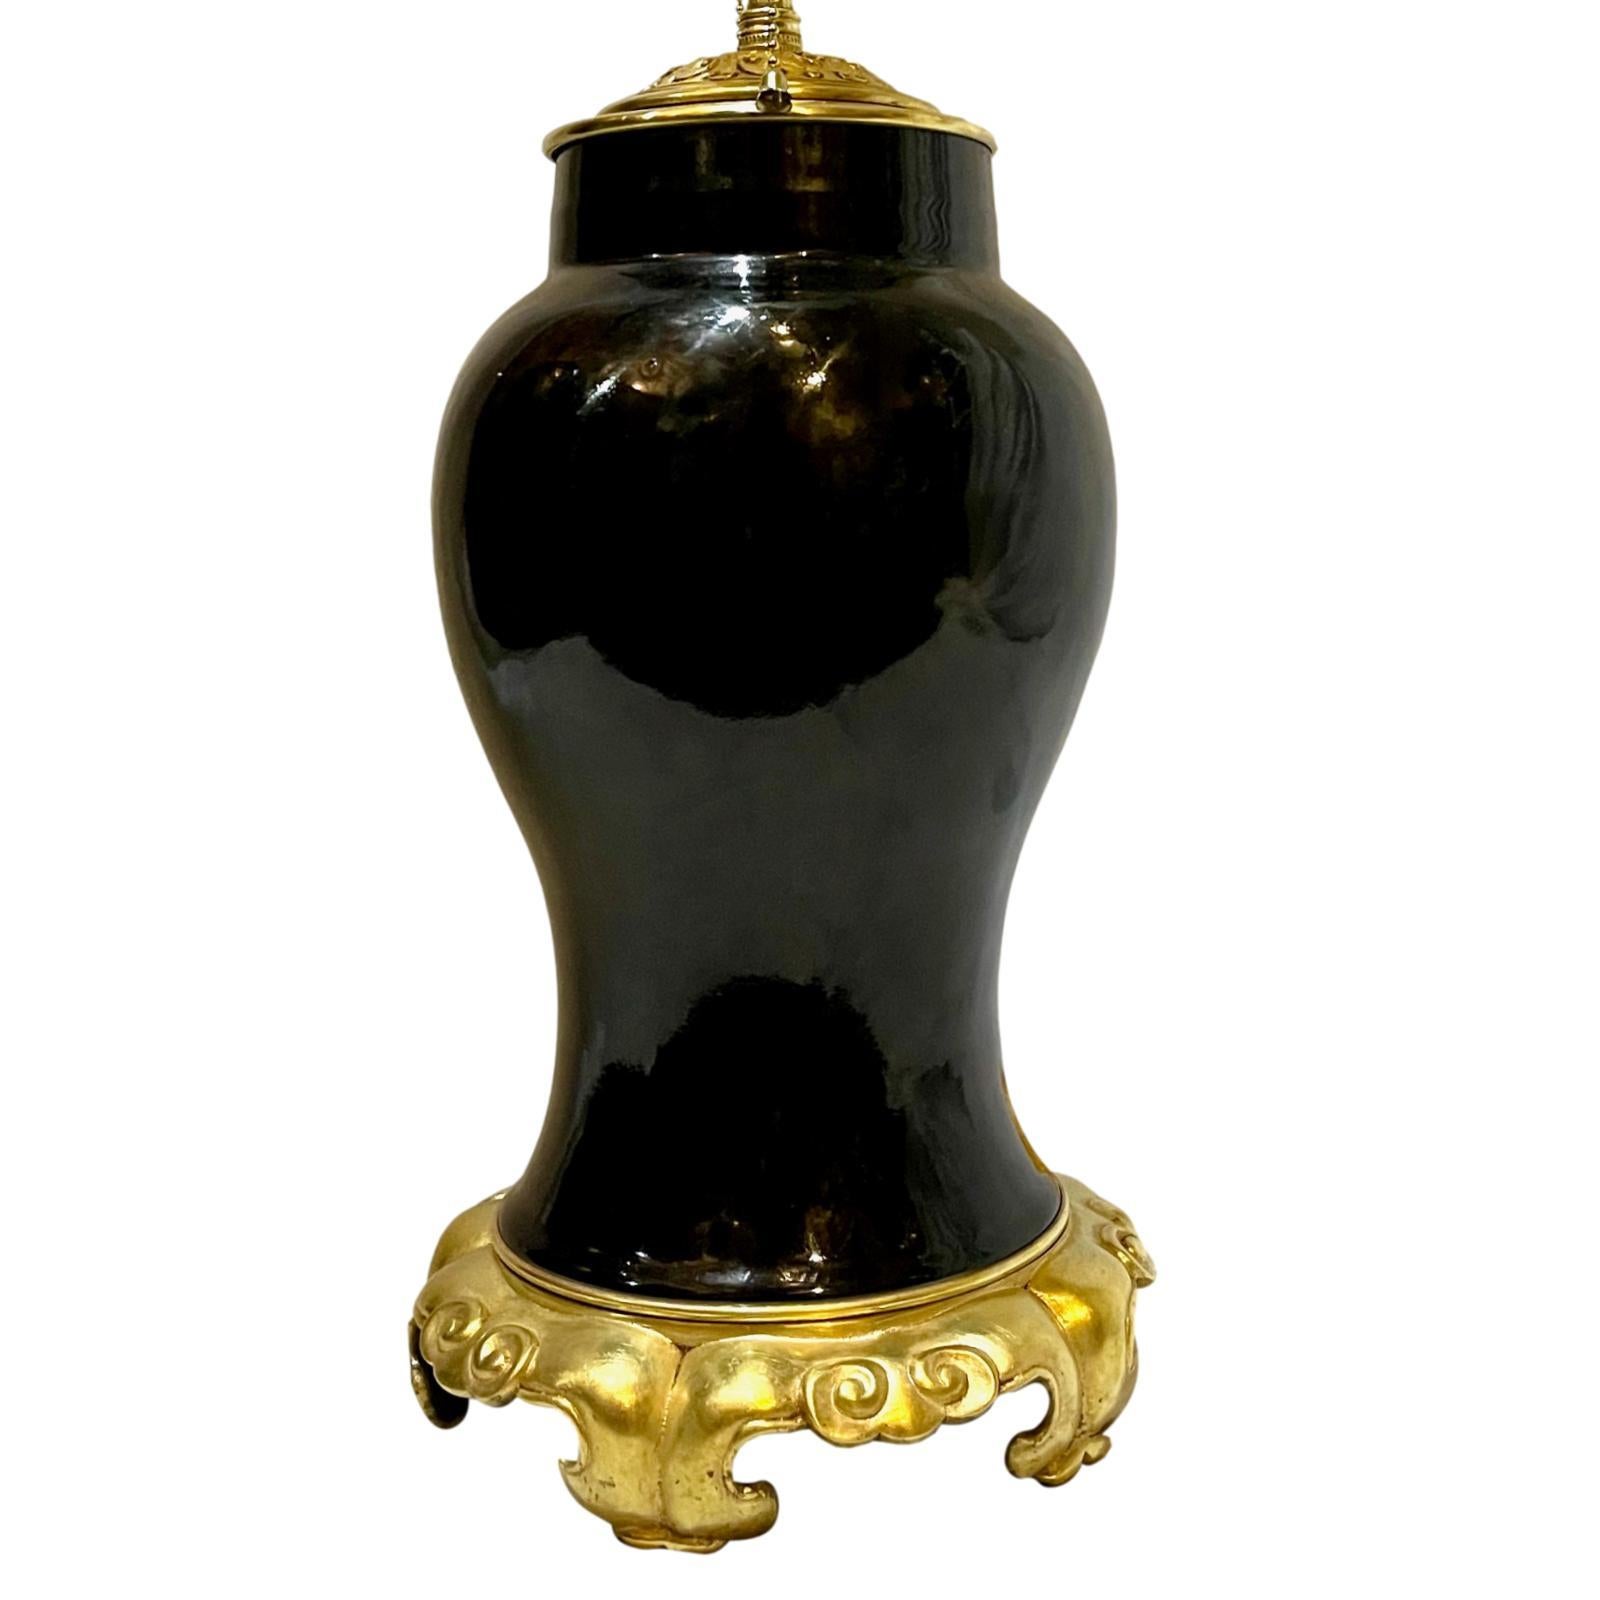 Une seule lampe de table française en porcelaine datant d'environ 1900, avec une base en bronze doré et un corps en porcelaine chinoise.

Mesures :
Hauteur du corps : 14,5